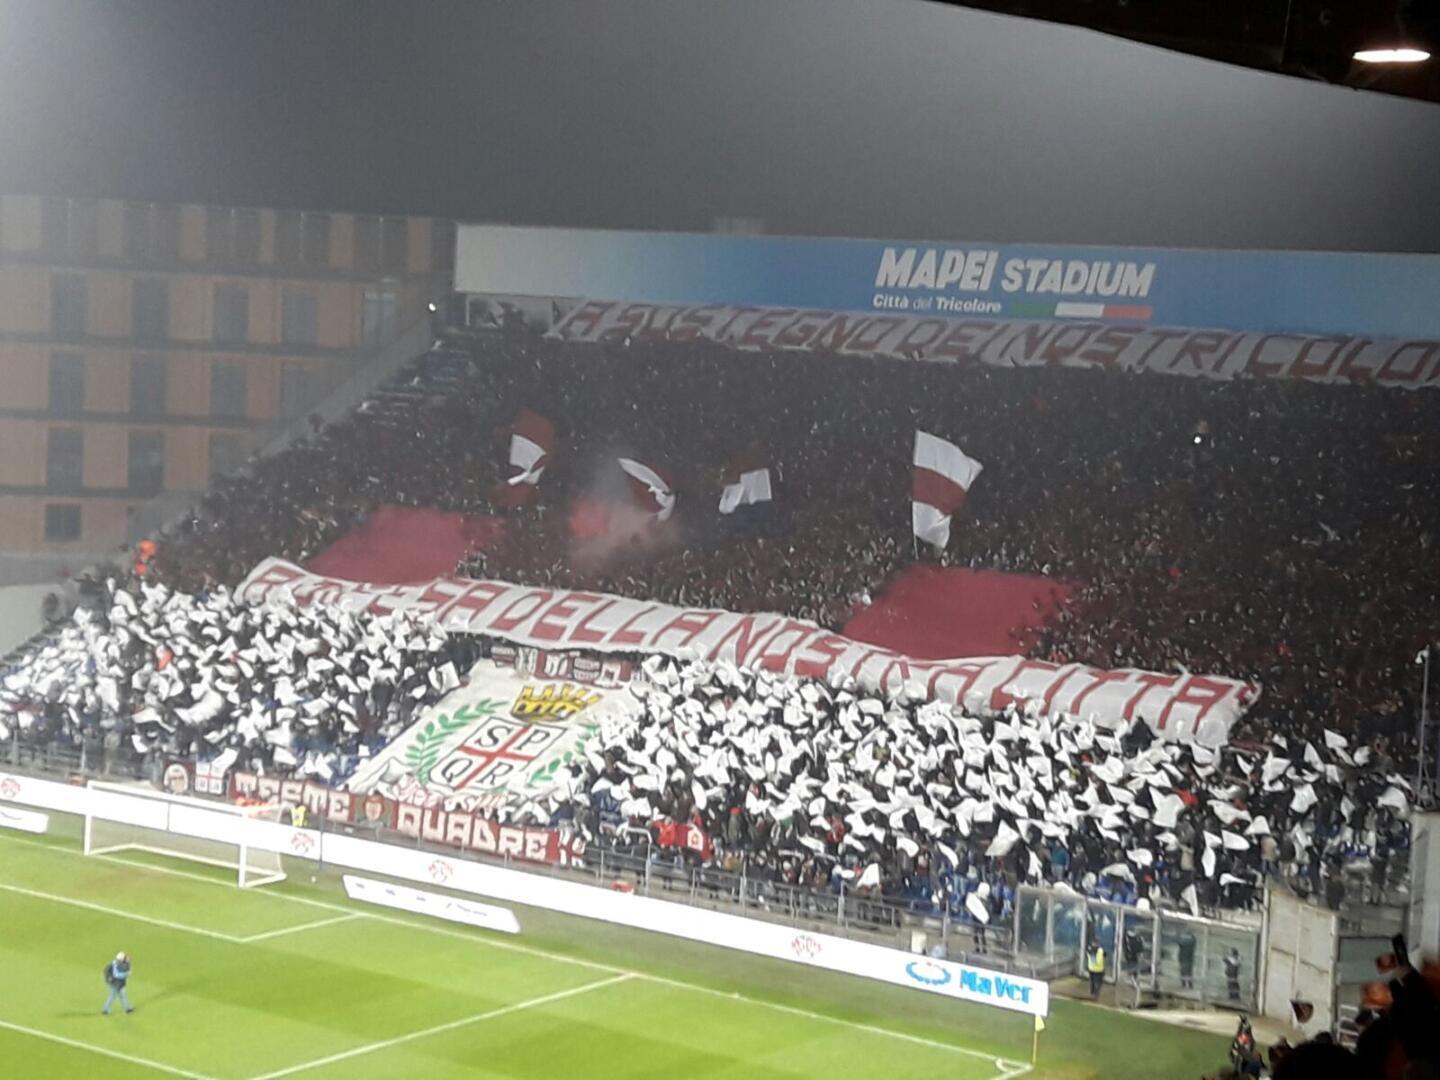 Modena-Cittadella: la carica dei 2mila - Modena FC